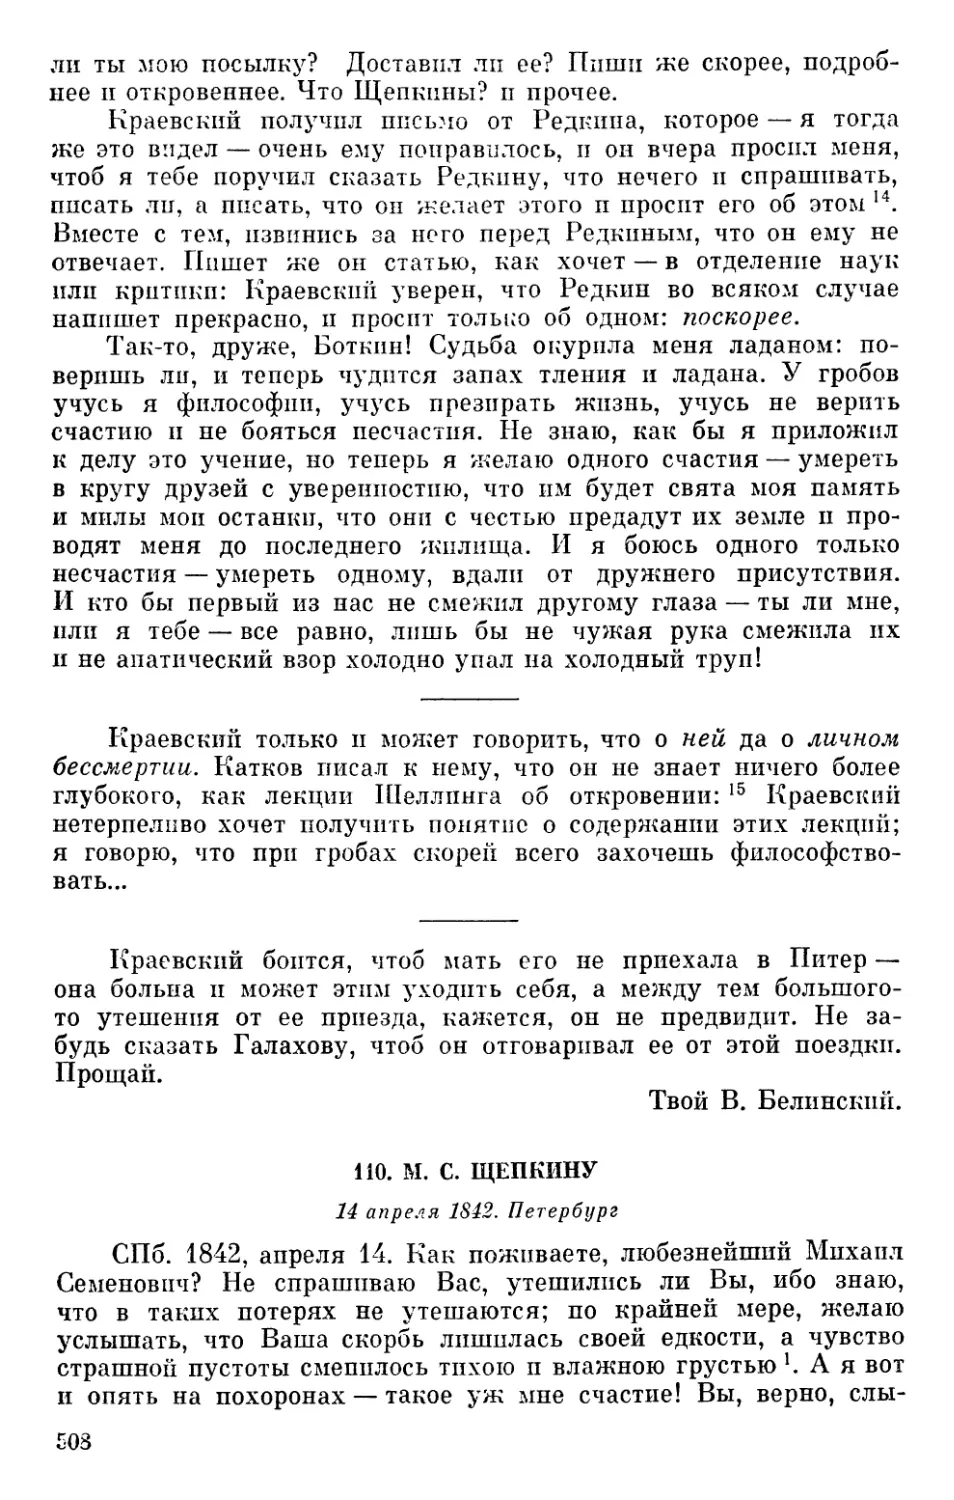 110. М. С. Щепкину. 14 апреля 1842